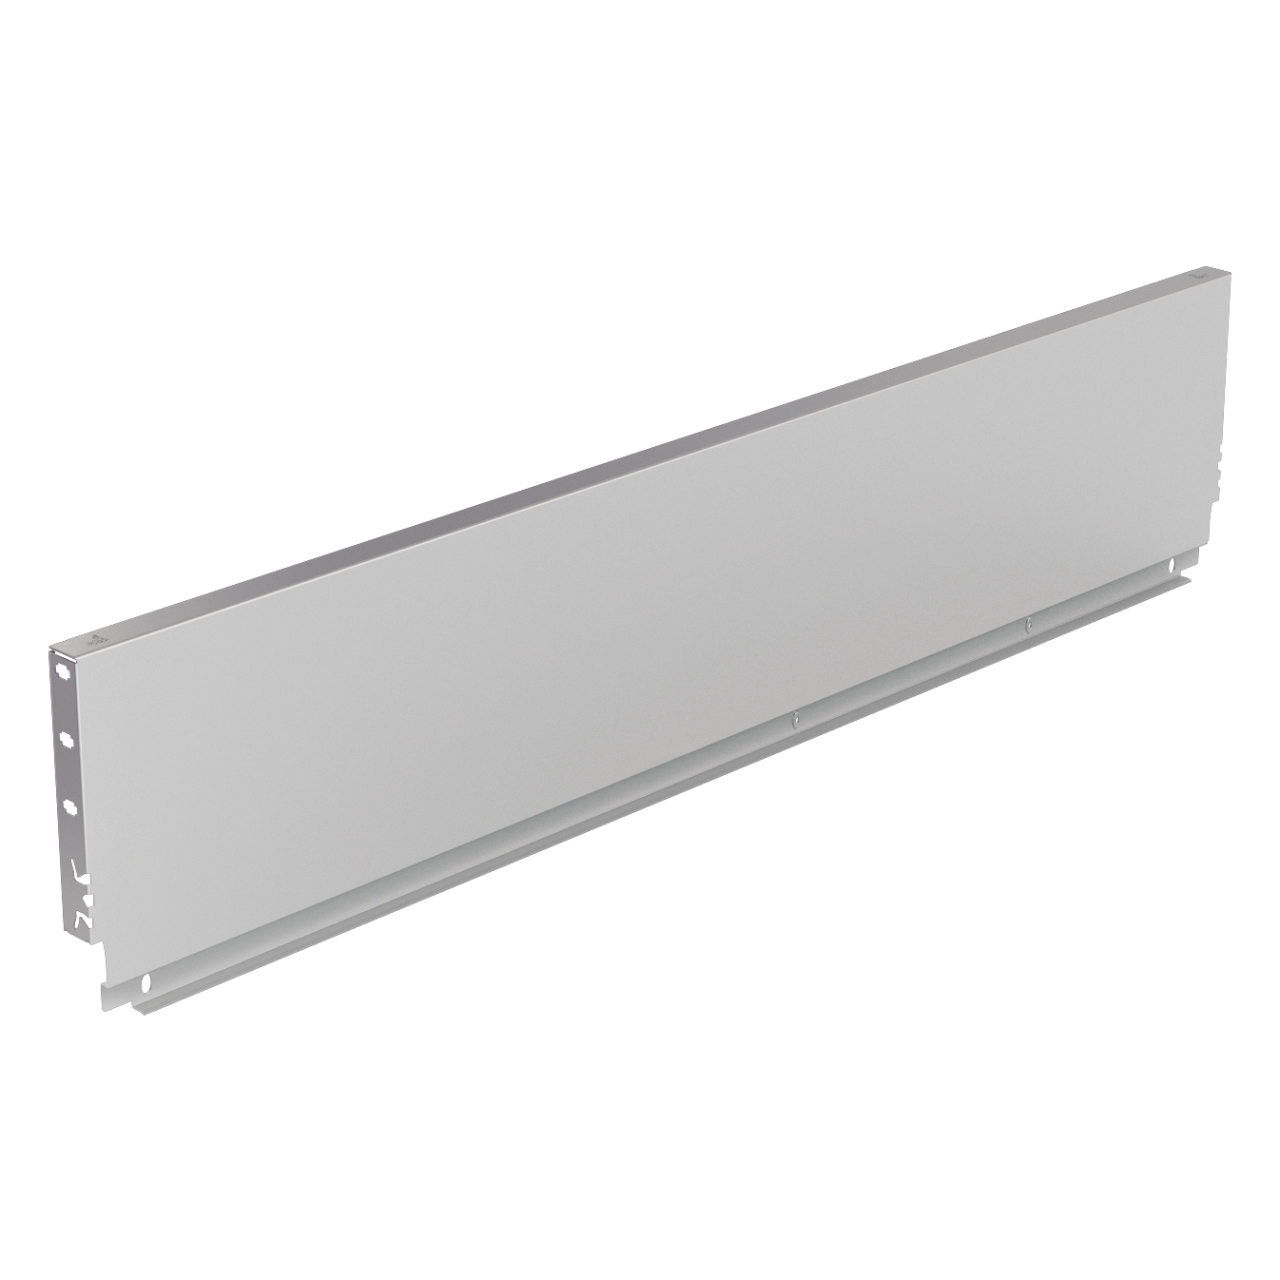 HETTICH Stahlrückwand ArciTech, 250 x 400 mm, weiß, 9121692